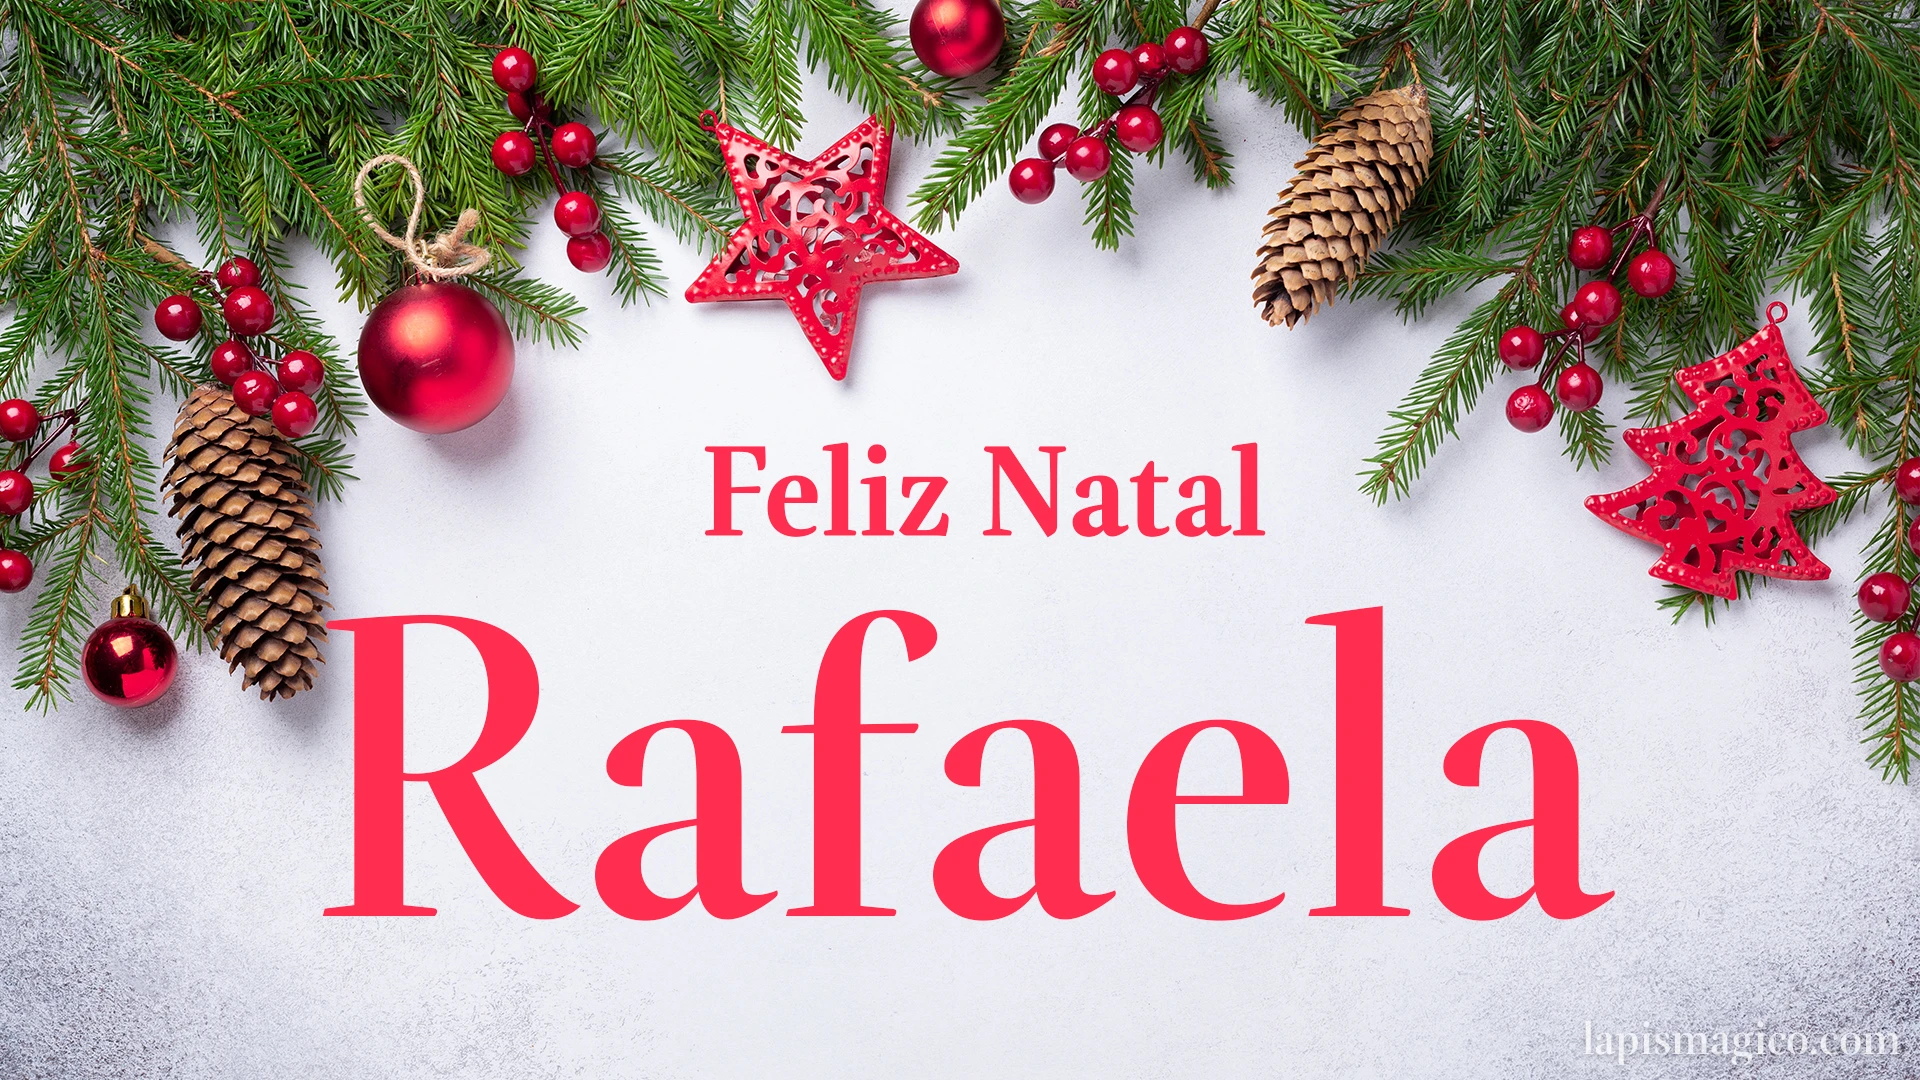 Oh Rafaela, cinco postais de Feliz Natal Postal com o teu nome